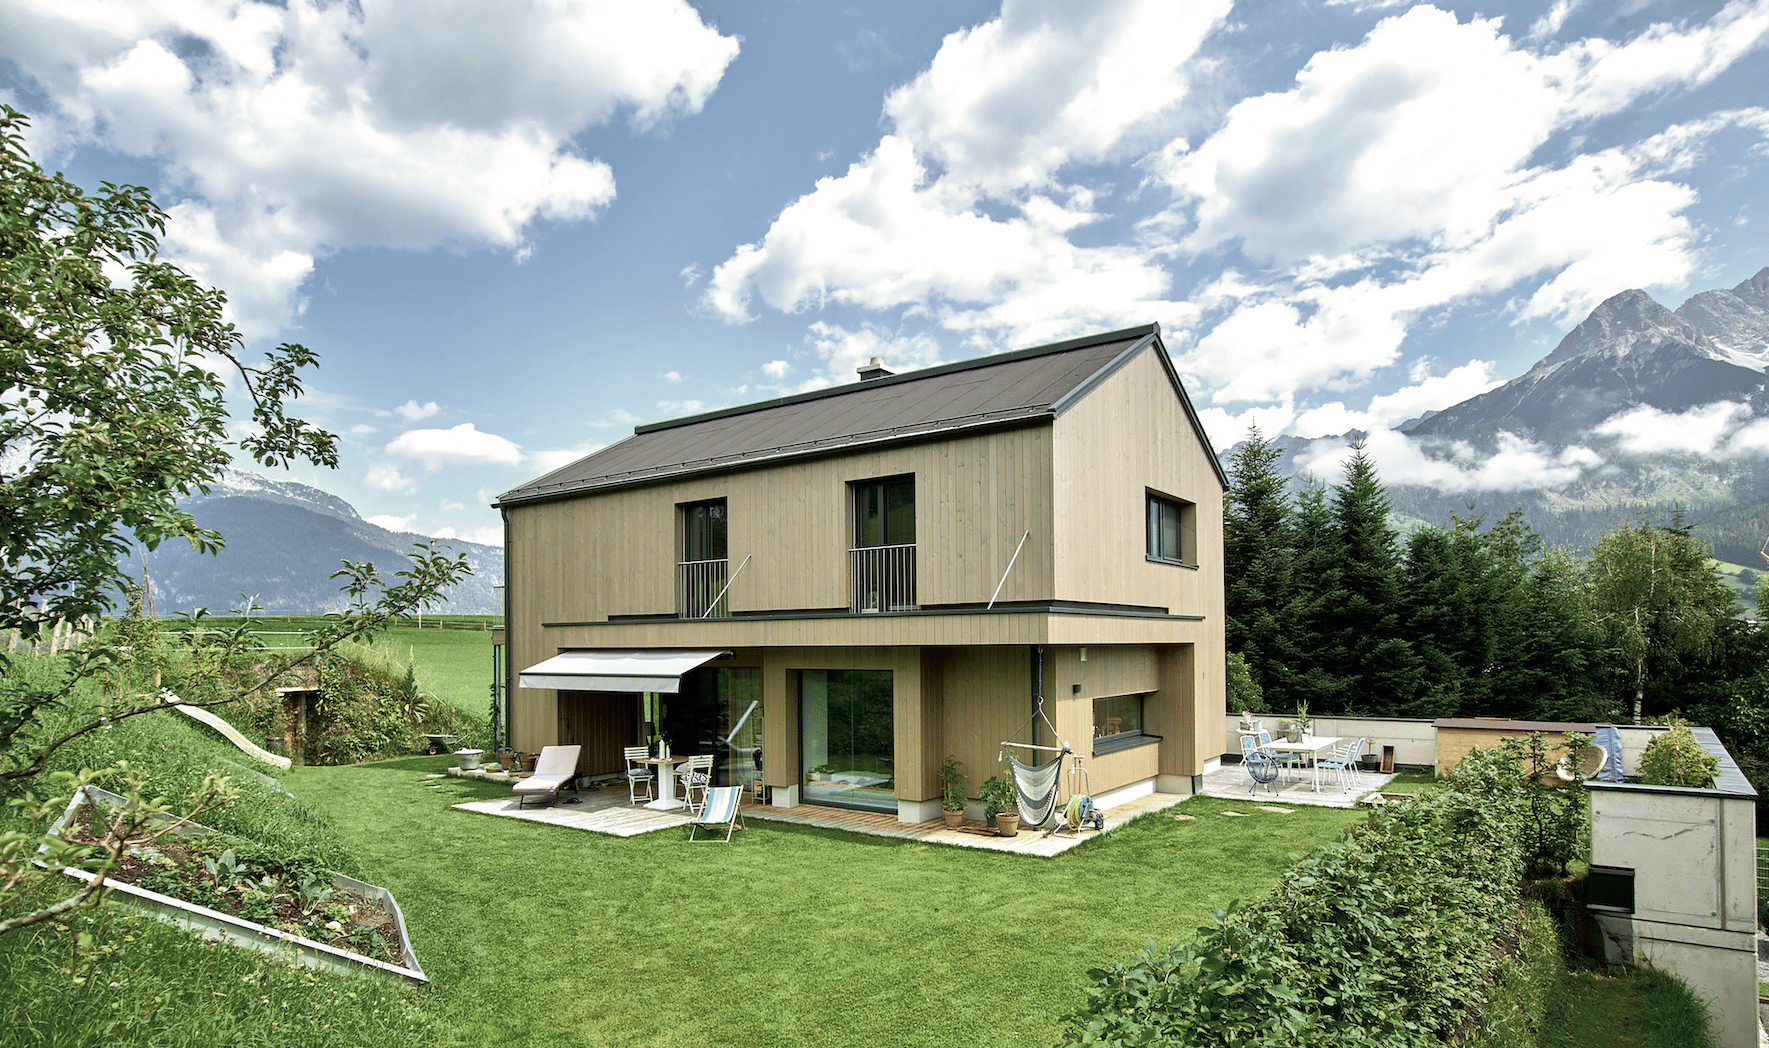 ERLER BAU GmbH zeigt ein modernes Einfamilienhaus aus Holz mit großen Fenstern und einer mit Markise überdachten Terrasse mit Fliesenboden und gemütlichen Möbeln im gepflegten großen Garten.